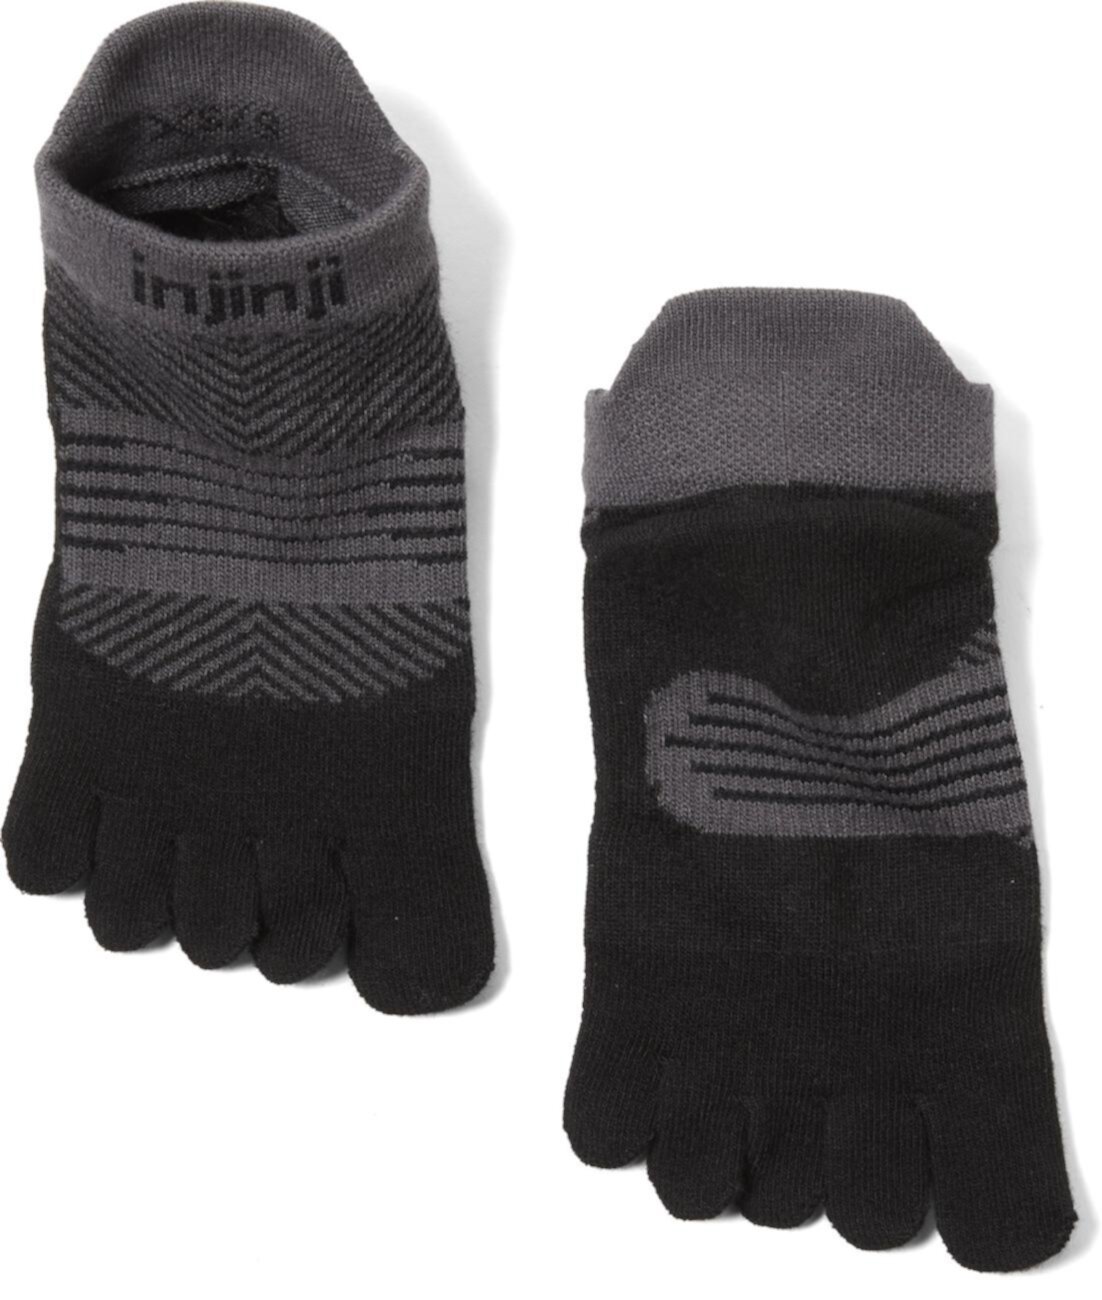 Легкие носки для бега, не показывающиеся в шоу - женские Injinji